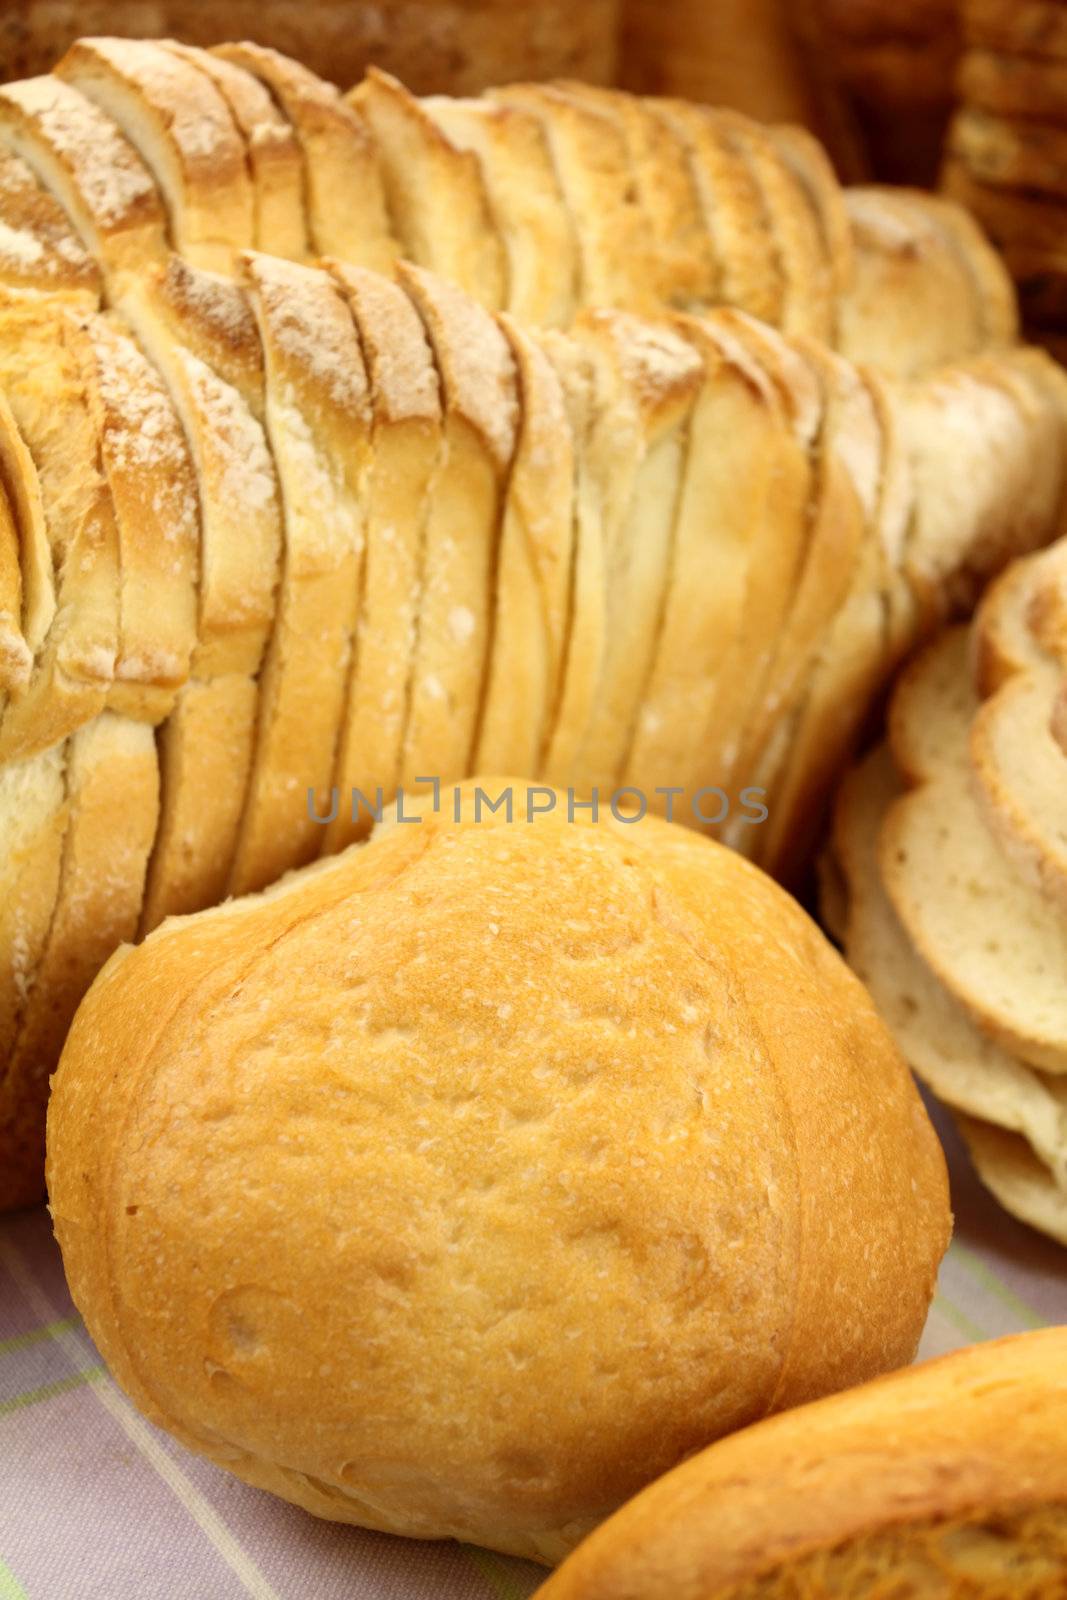 Bread Textures by jabiru